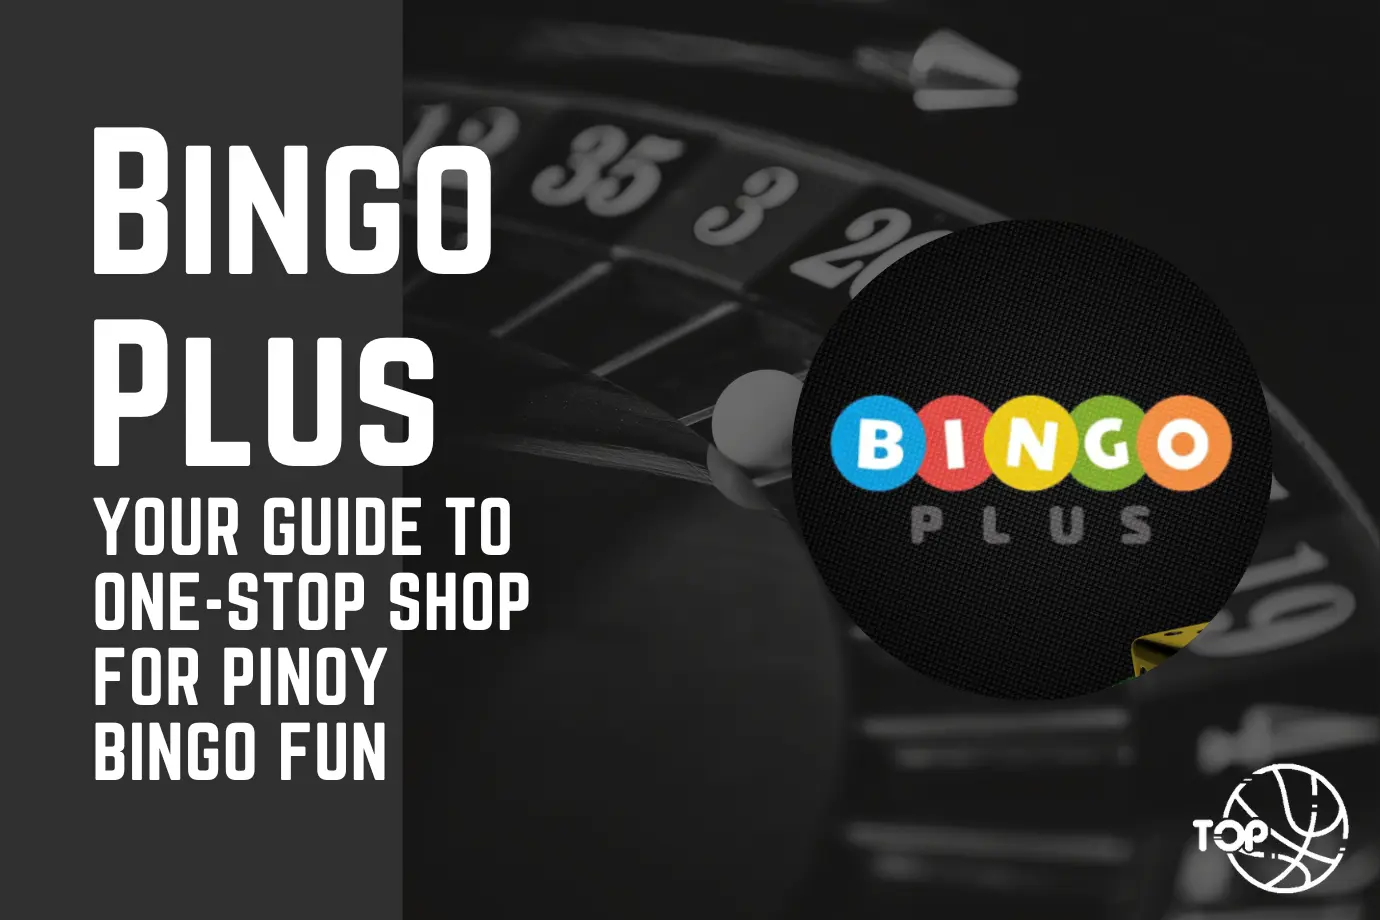 BingoPlus: Your Guide to One-Stop Shop for Pinoy Bingo Fun